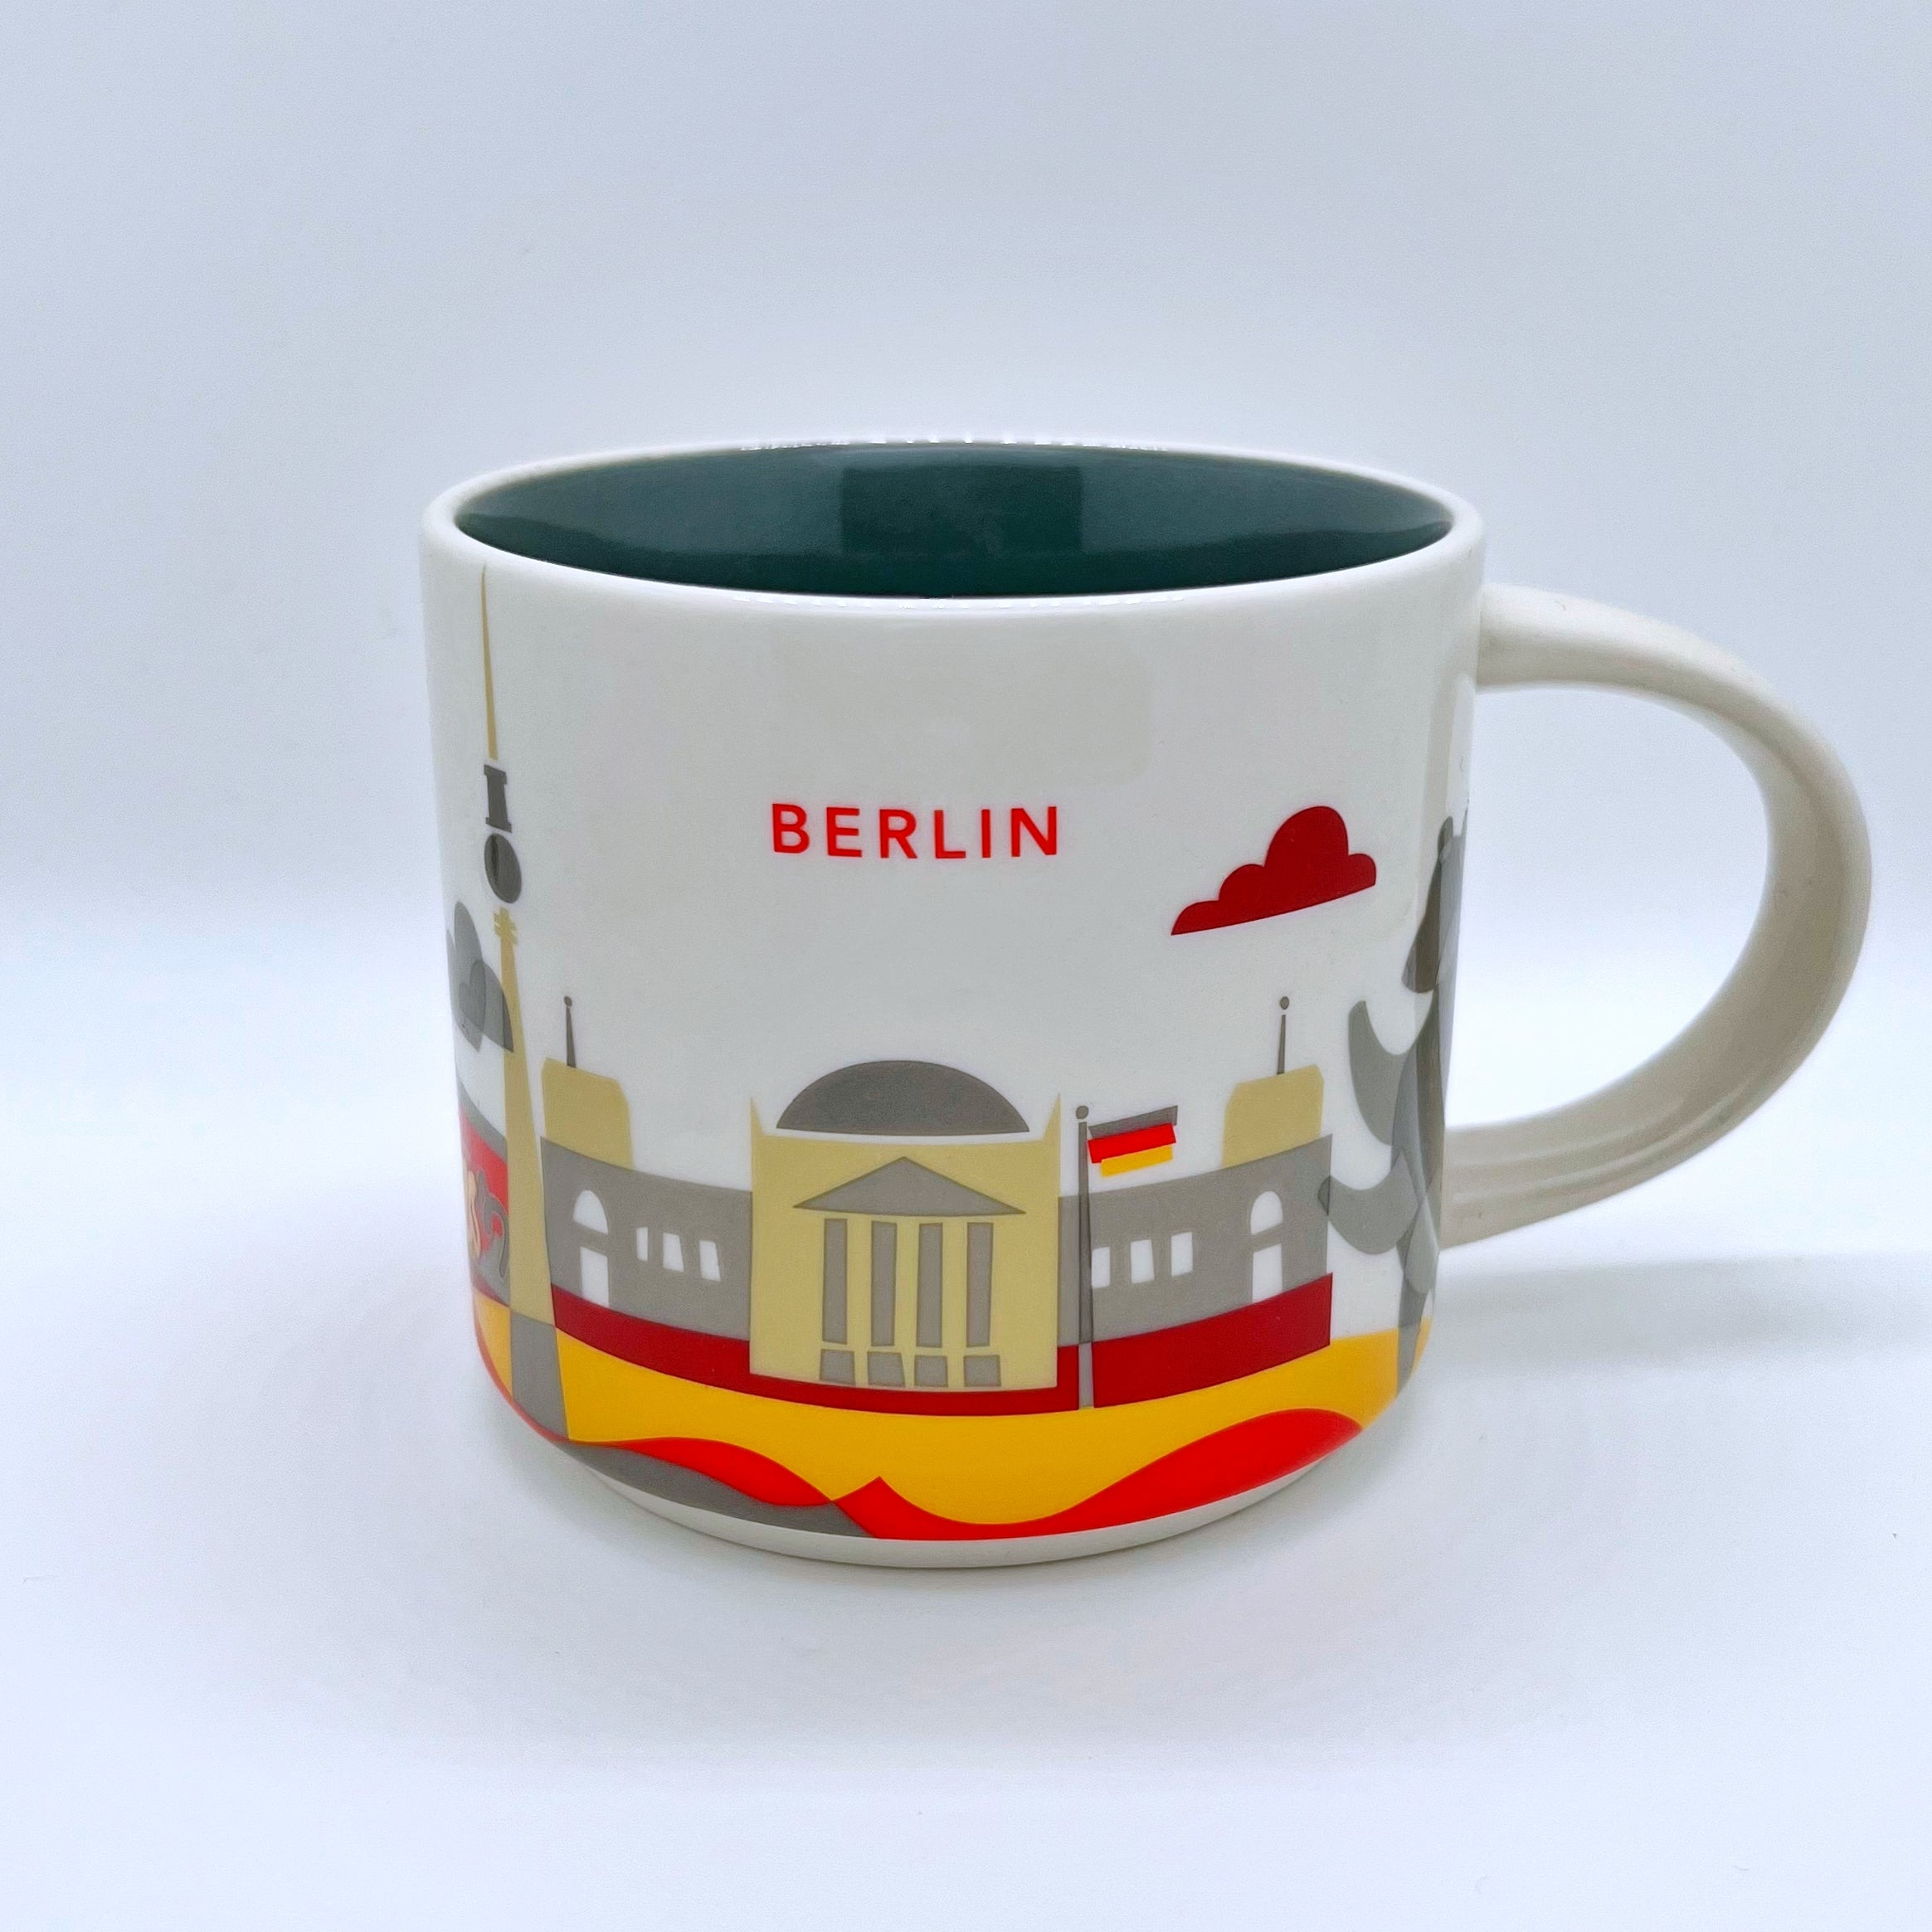 Kaffee Tee und Cappuccino Tasse von Starbucks mit gemalten Bildern aus der Stadt Berlin